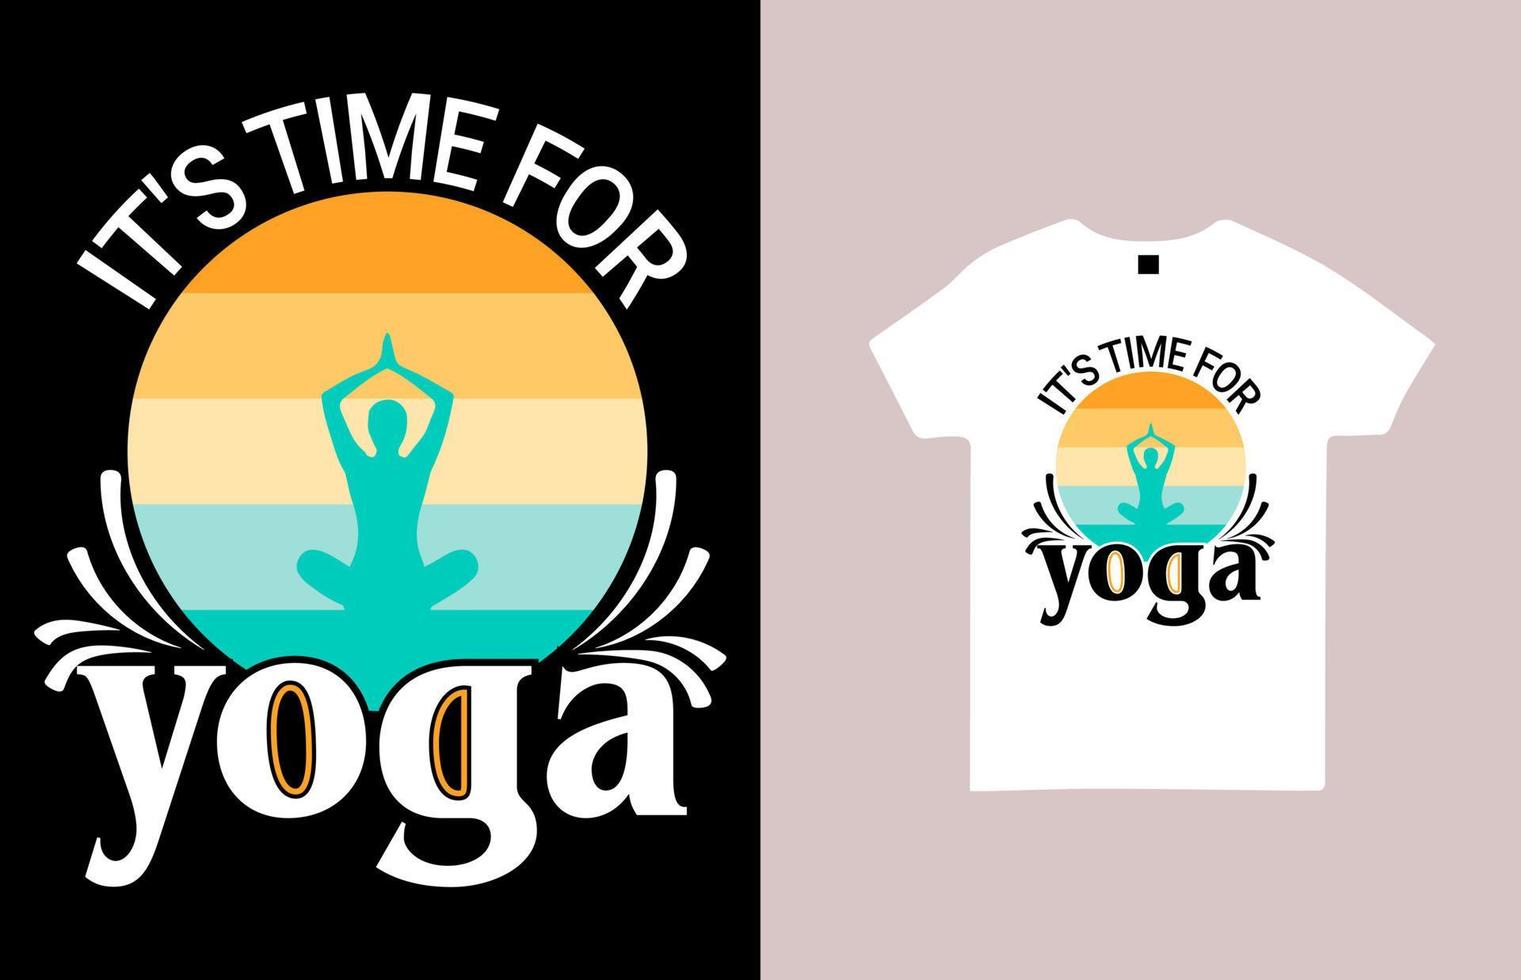 det är dags för yoga-t-shirtdesign för yoga vektor